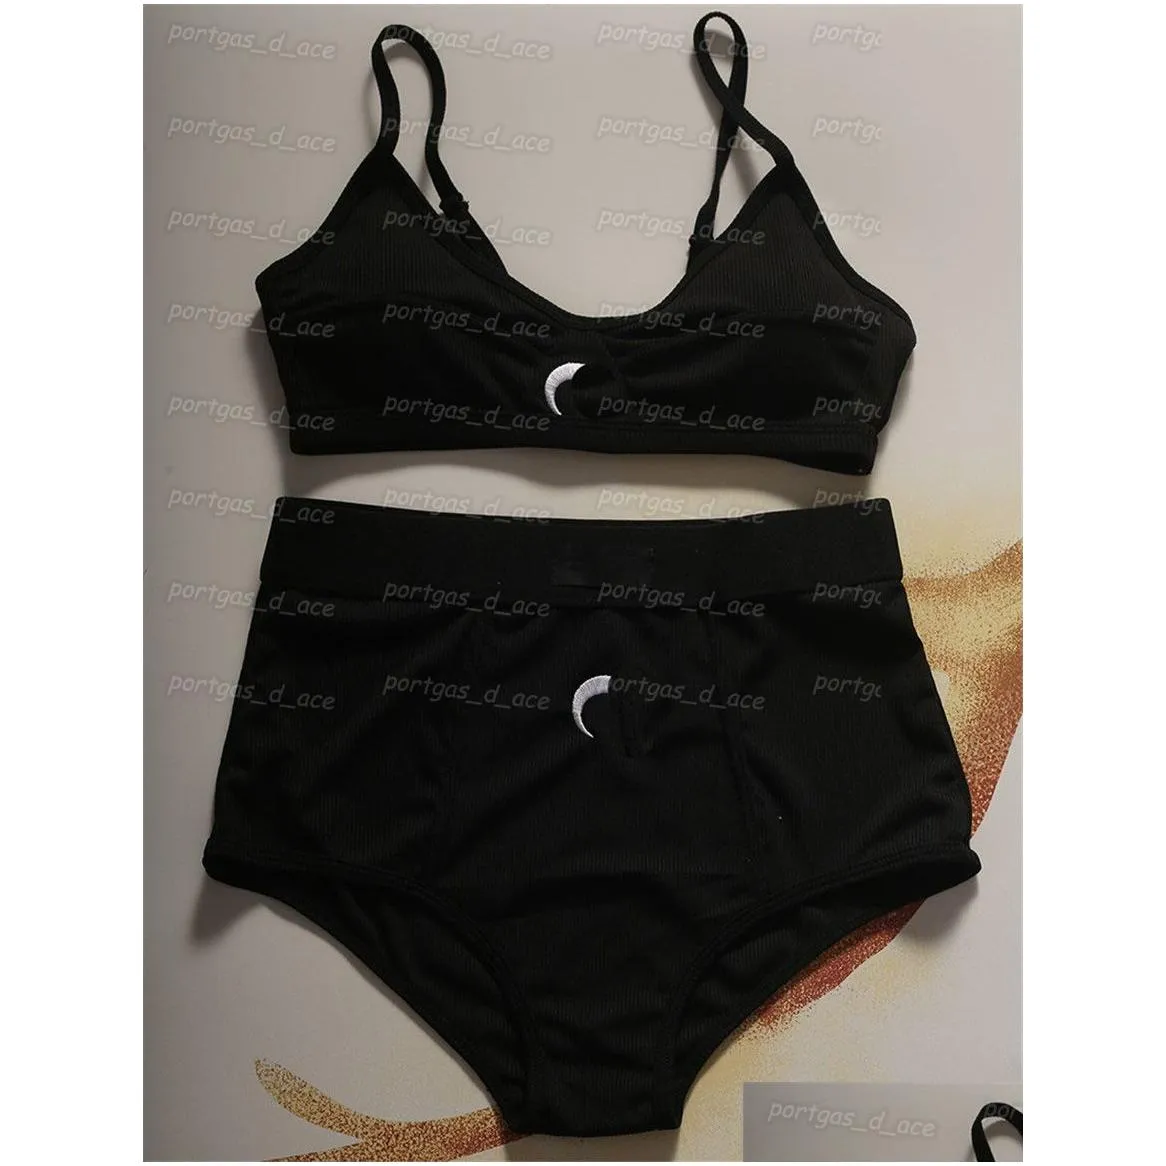 Womens Wire Free Bras Comfortable Sports Underwear Set Fashion Brief Bra Vintage Black White Lingerie